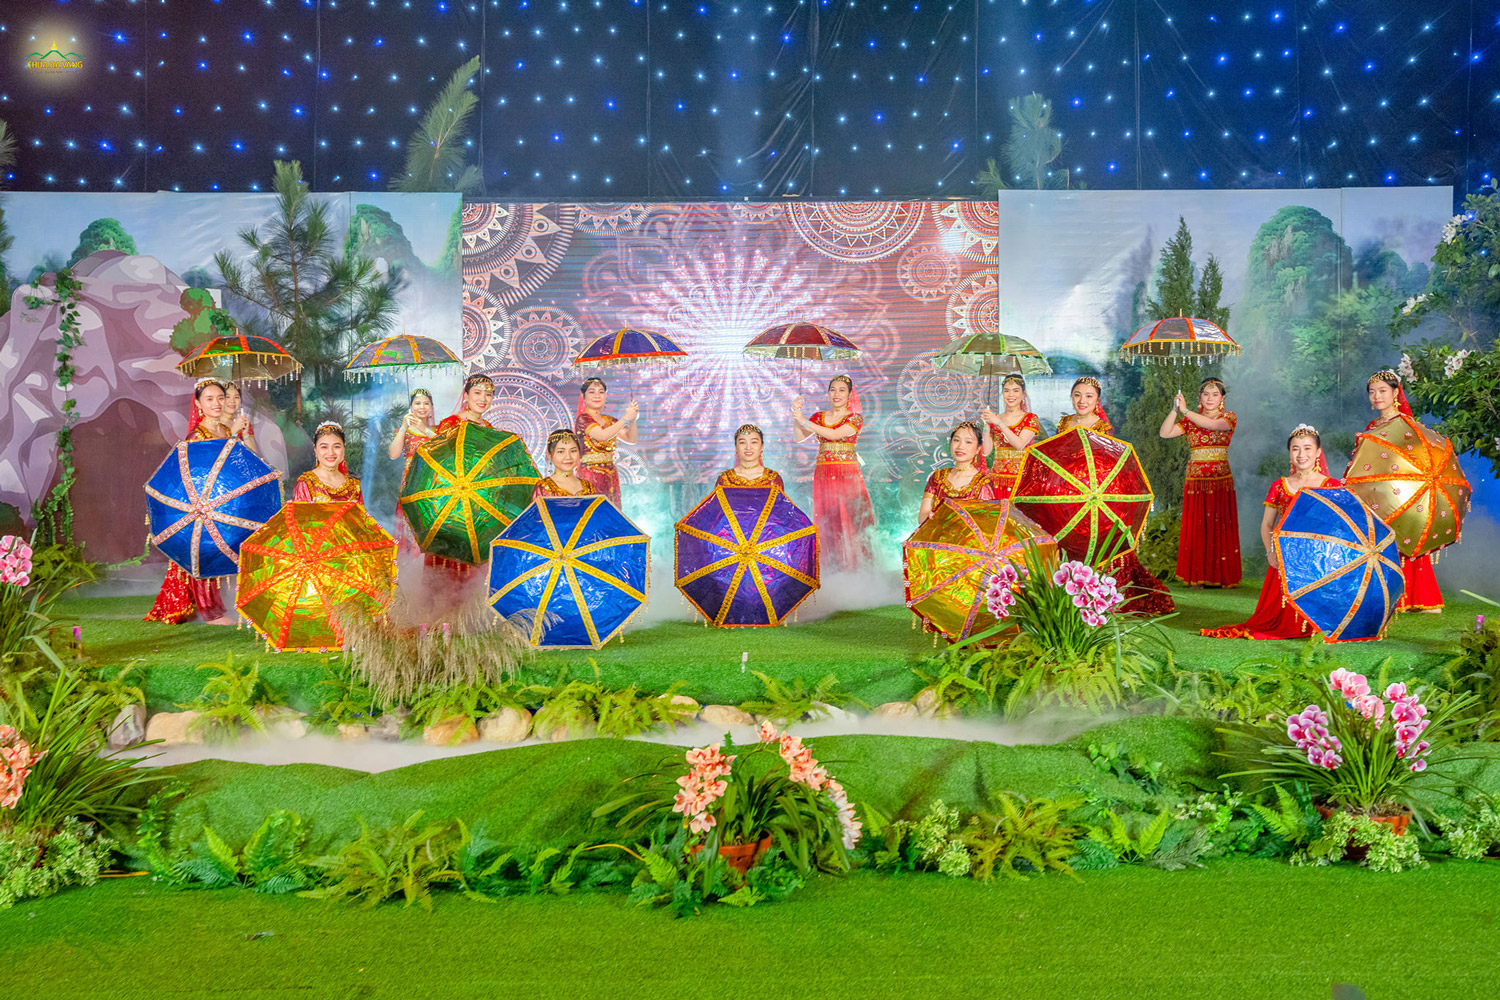   Mở màn cho đêm văn nghệ là tiết mục múa Ấn Độ đặc sắc được thể hiện bởi các Phật tử trẻ chùa Ba Vàng  